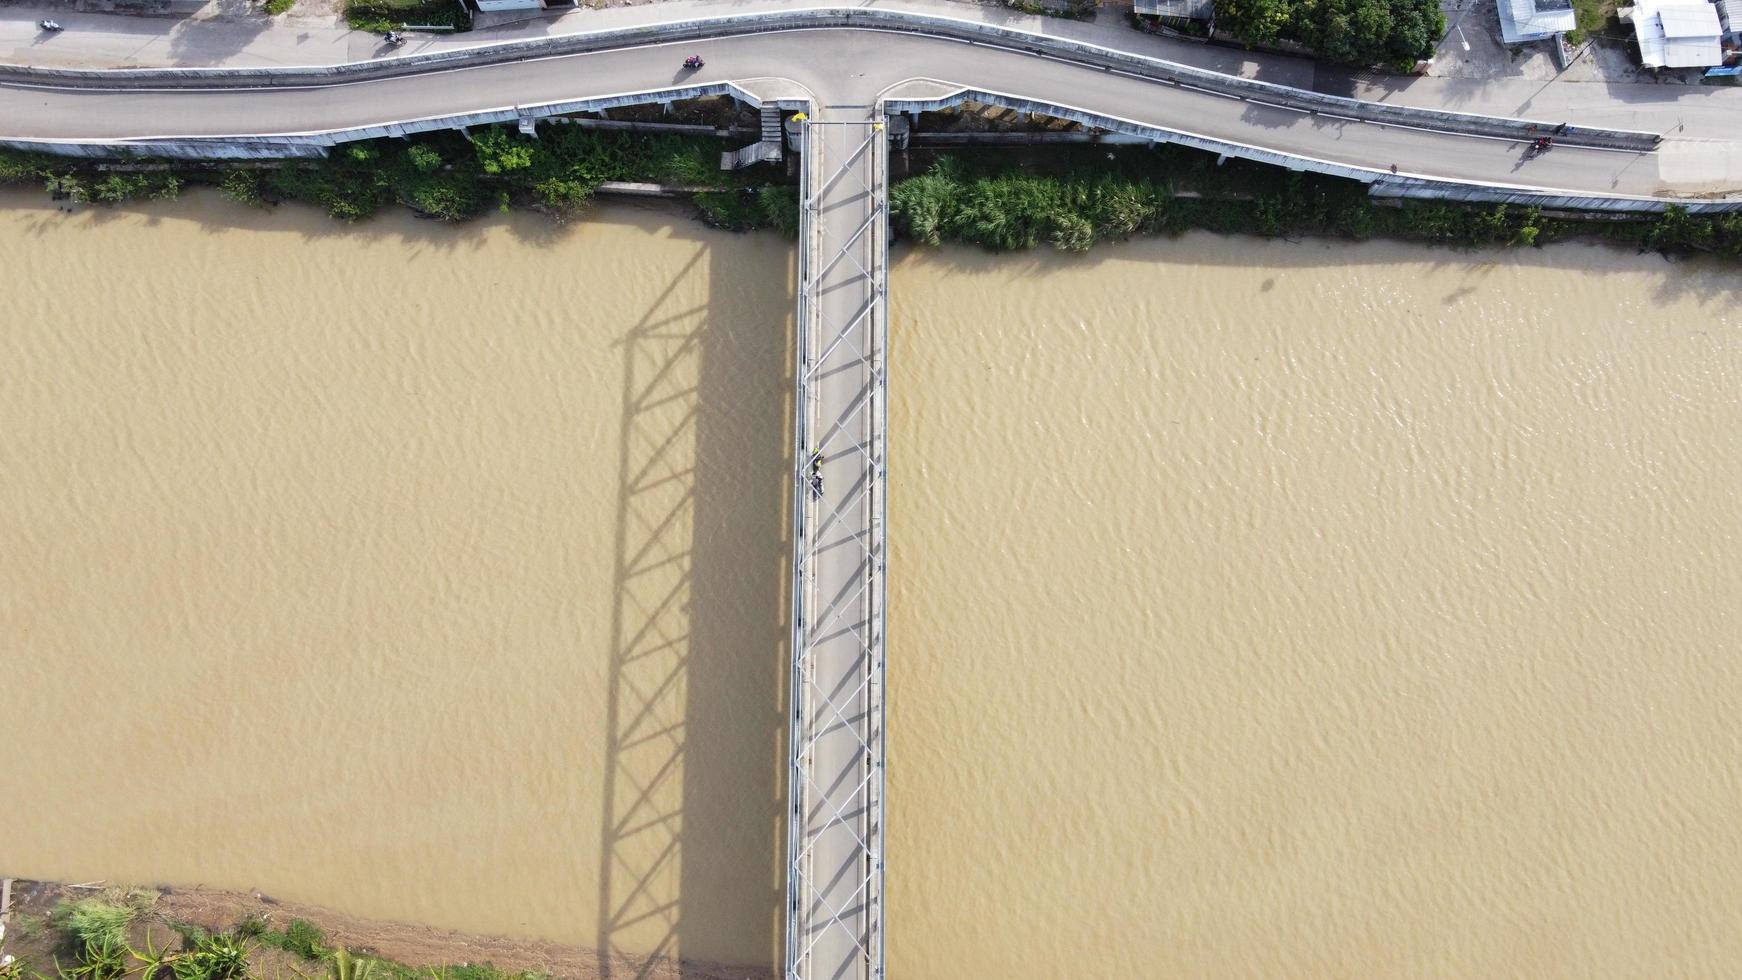 bekasi, indonesien 2021 - Luftdrohnenansicht einer langen Brücke am Ende des Flusses, die zwei Dörfer verbindet foto